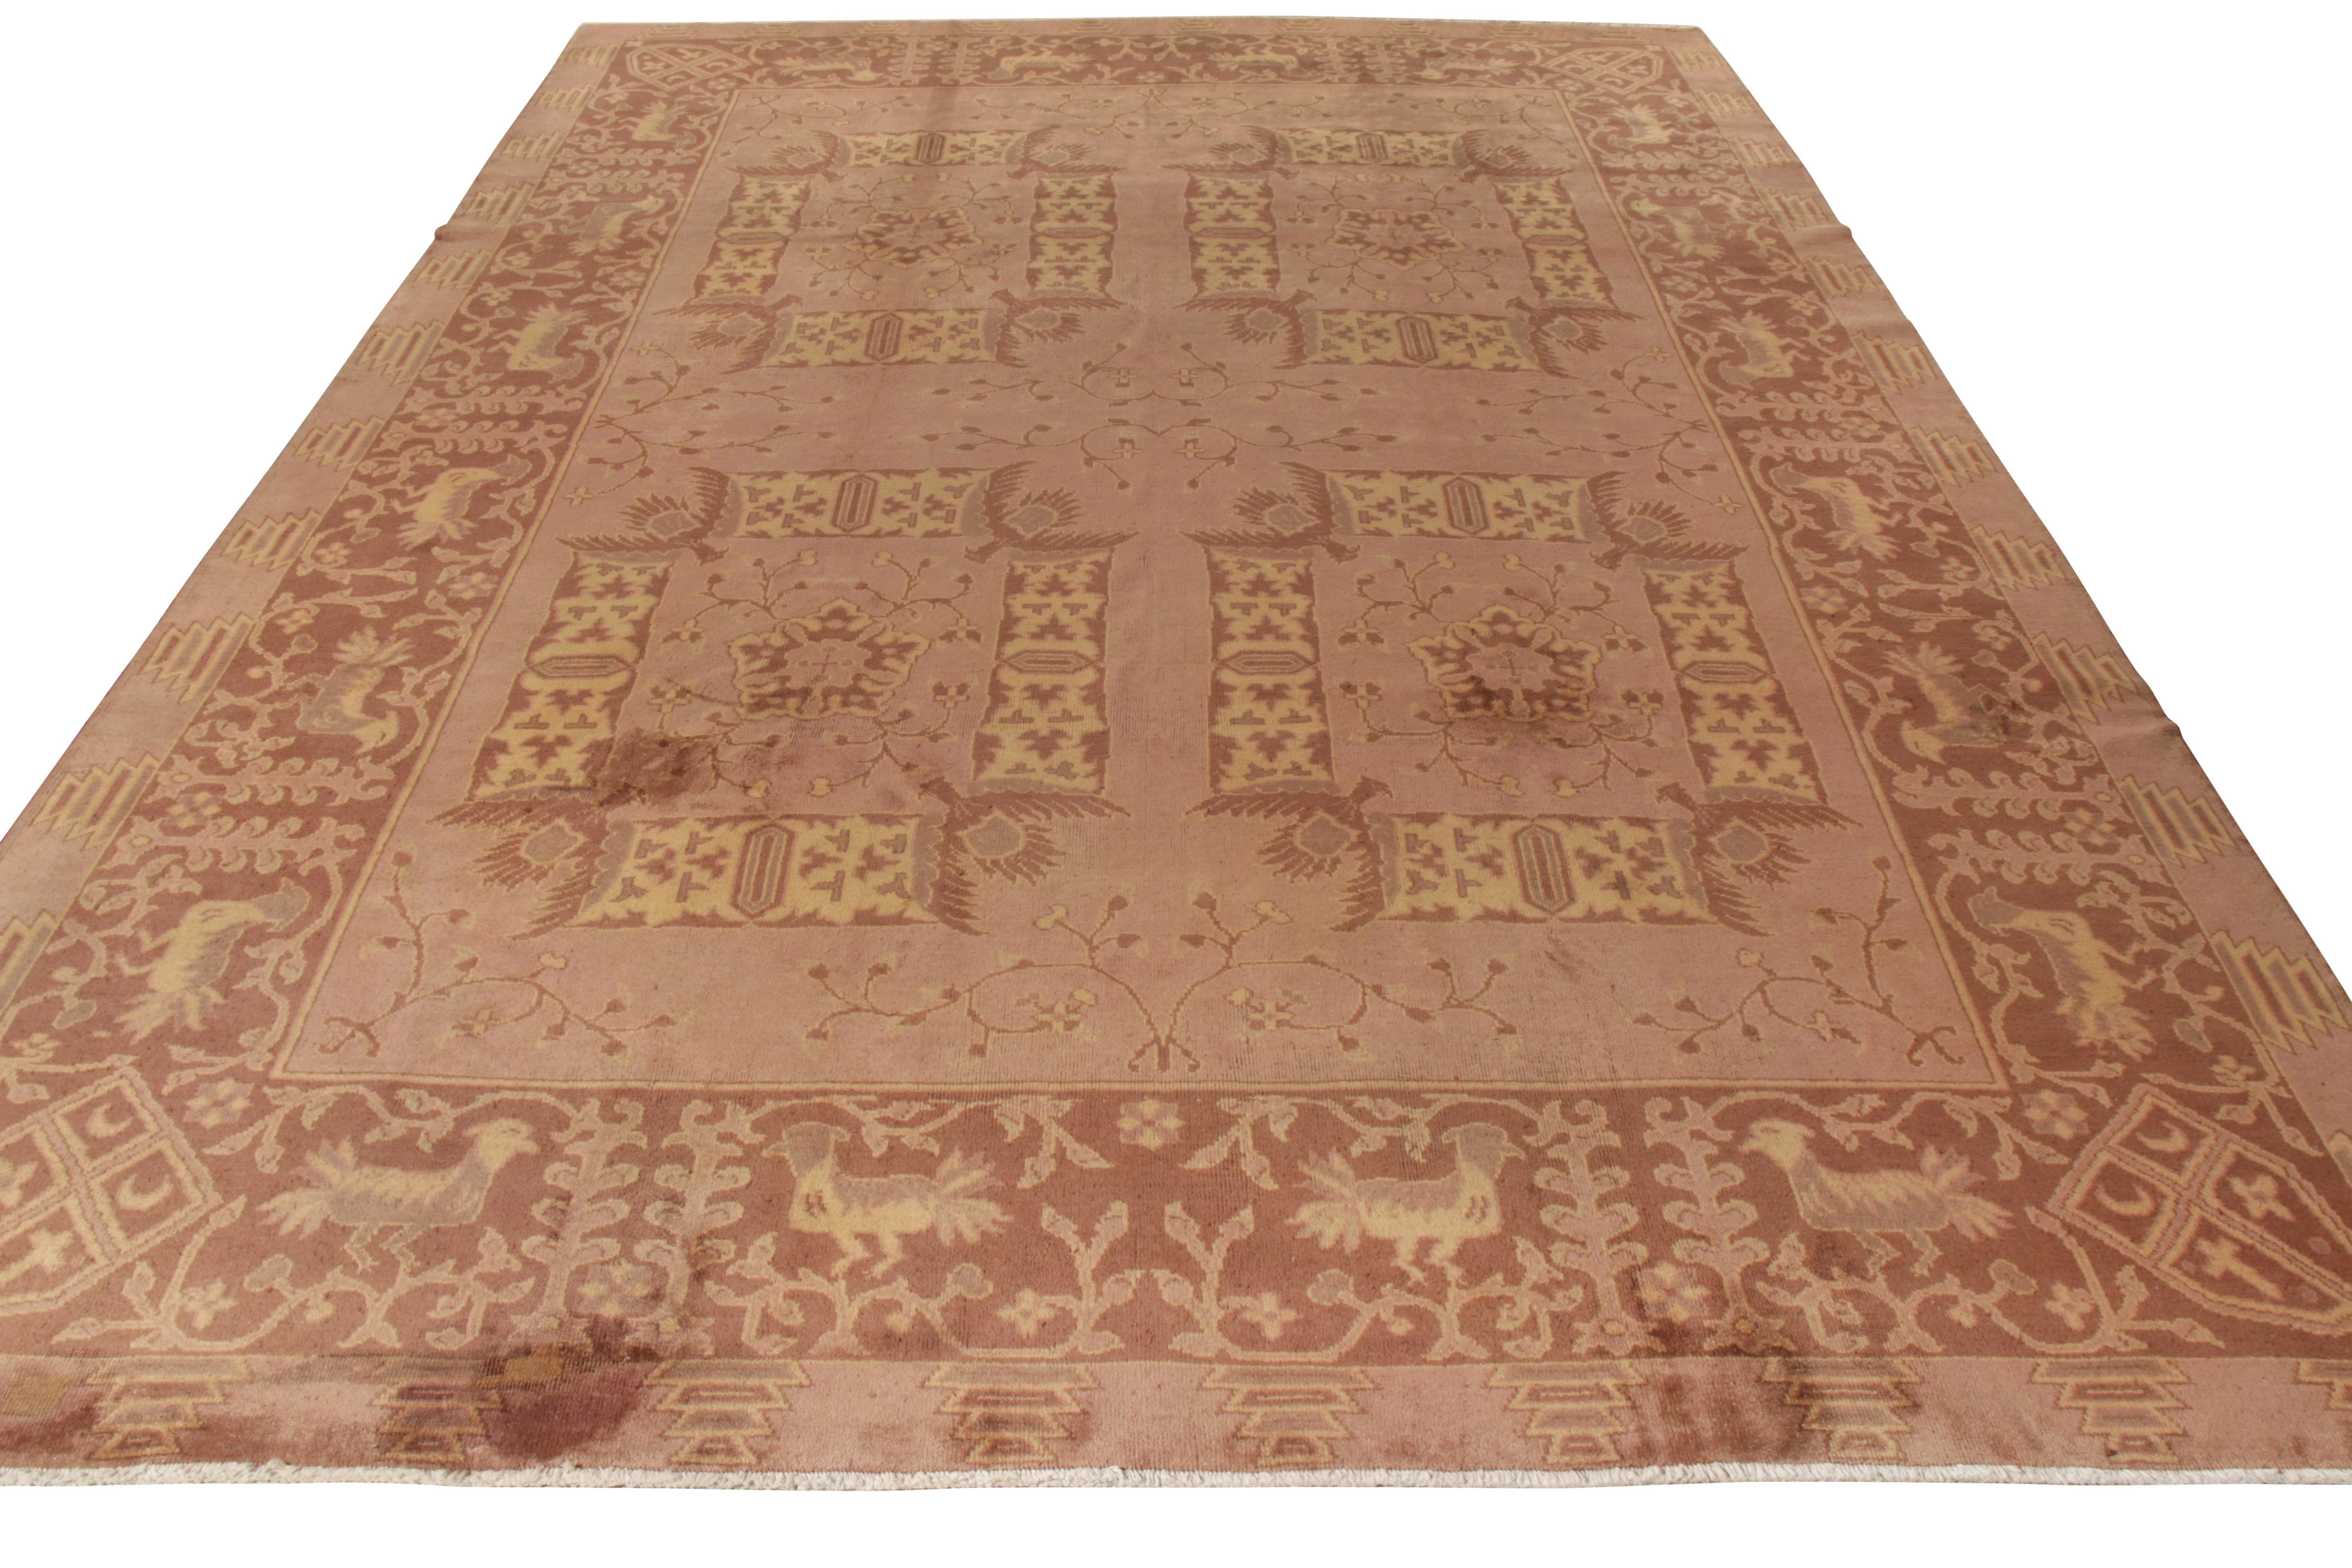 Handgeknüpfter Wollteppich, ein antiker indischer Teppich aus der Zeit um 1900-1910, der zur Antique & Vintage Kollektion von Rug & Kilim gehört. Dieser indochinesische Samarkand-Teppich im Format 9x13 ist Zeuge eines verlockenden Spiels der